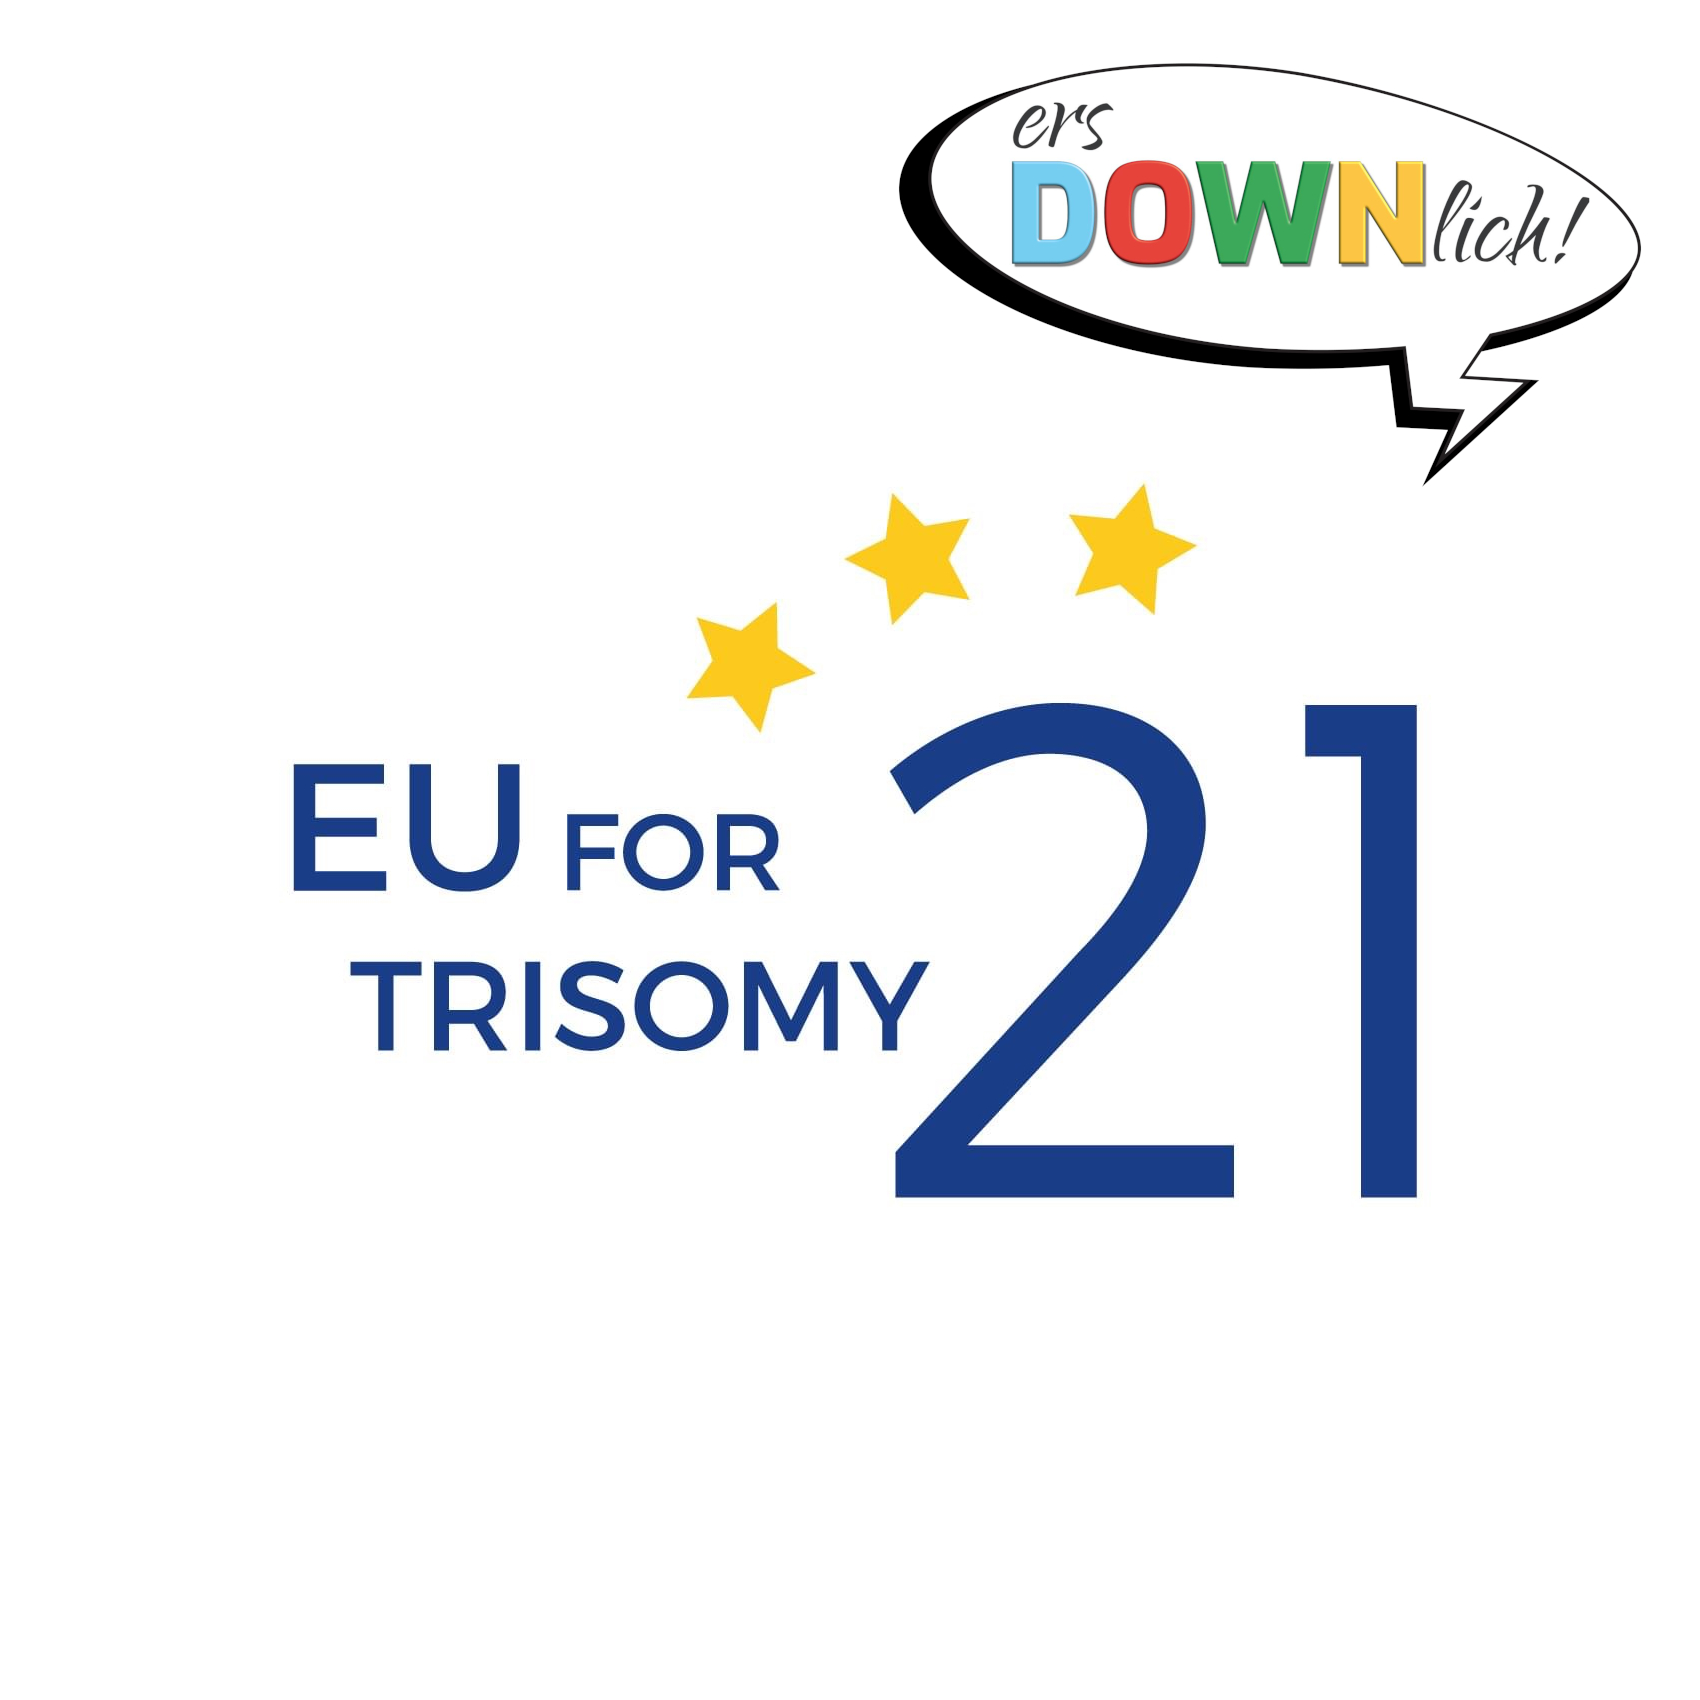 Logo von EU for Trisomy 21: Dunkelblaue Großbuchstaben auf weißem Grund: „EU“, daneben etwas kleiner „FOR“, darunter „TRISOMY“, daneben in wesentlich größerer Schrift „21“. Über der „21“ sind drei gelbe Sterne. Rechts oben ist eine Sprechblase mit dem Logo von ersDOWNlich!